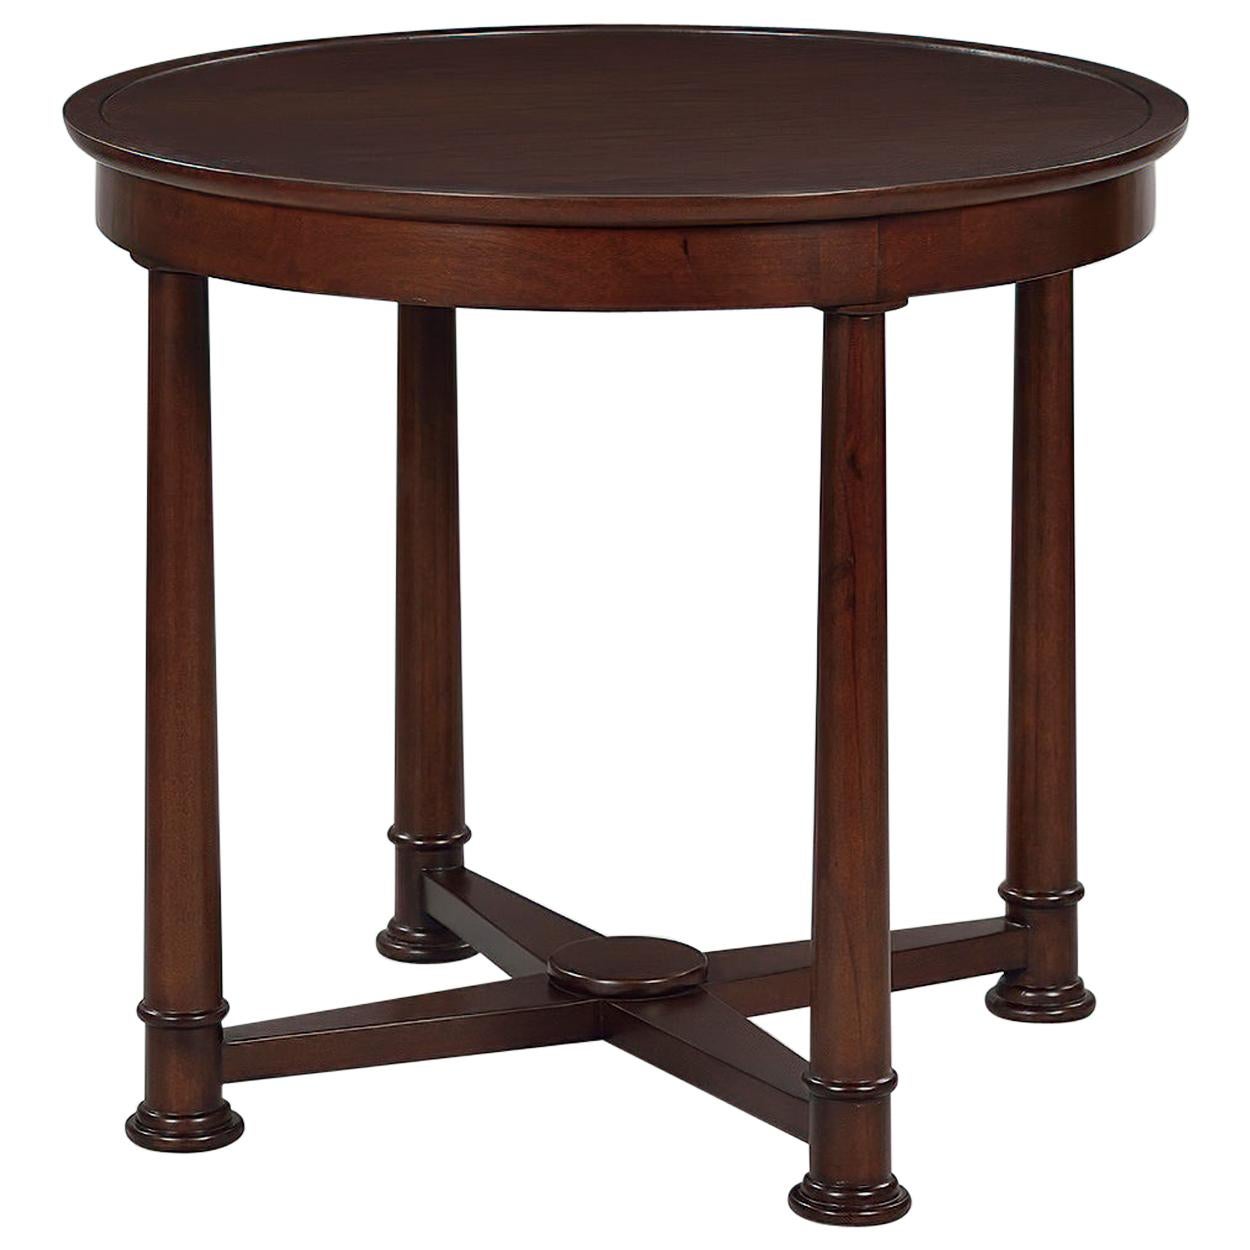 Empire Style Round Side Table, Mahogany Finish